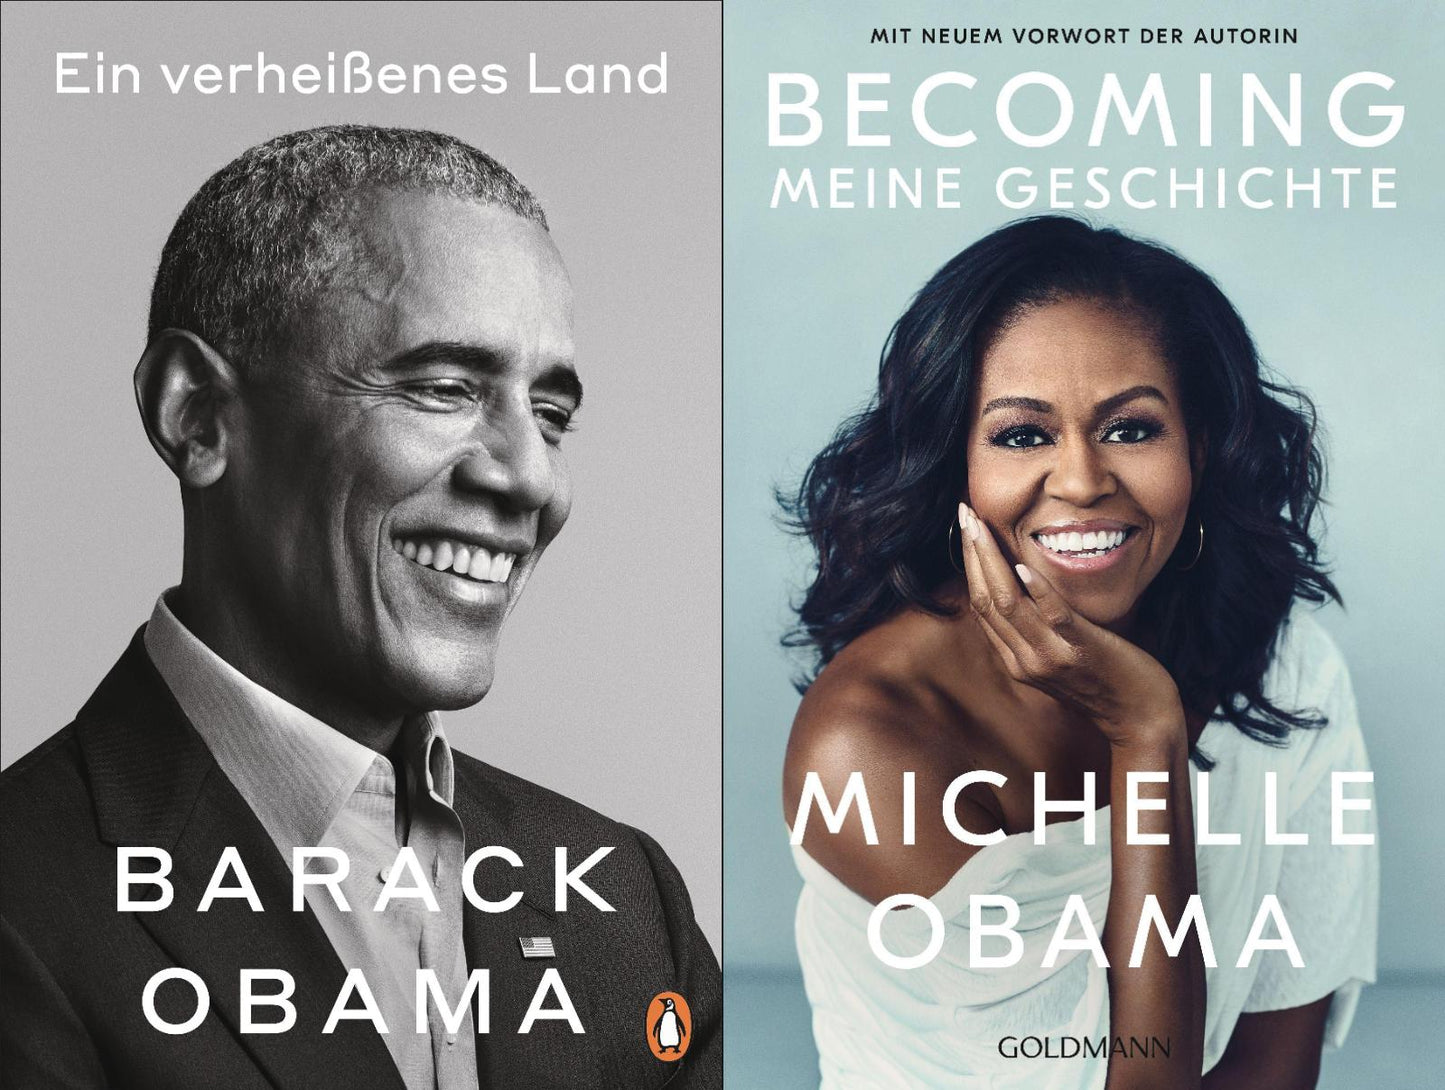 Ein verheißenes Land von Barack Obama + BECOMING von Michelle Obama + 1 exklusives Postkartenset